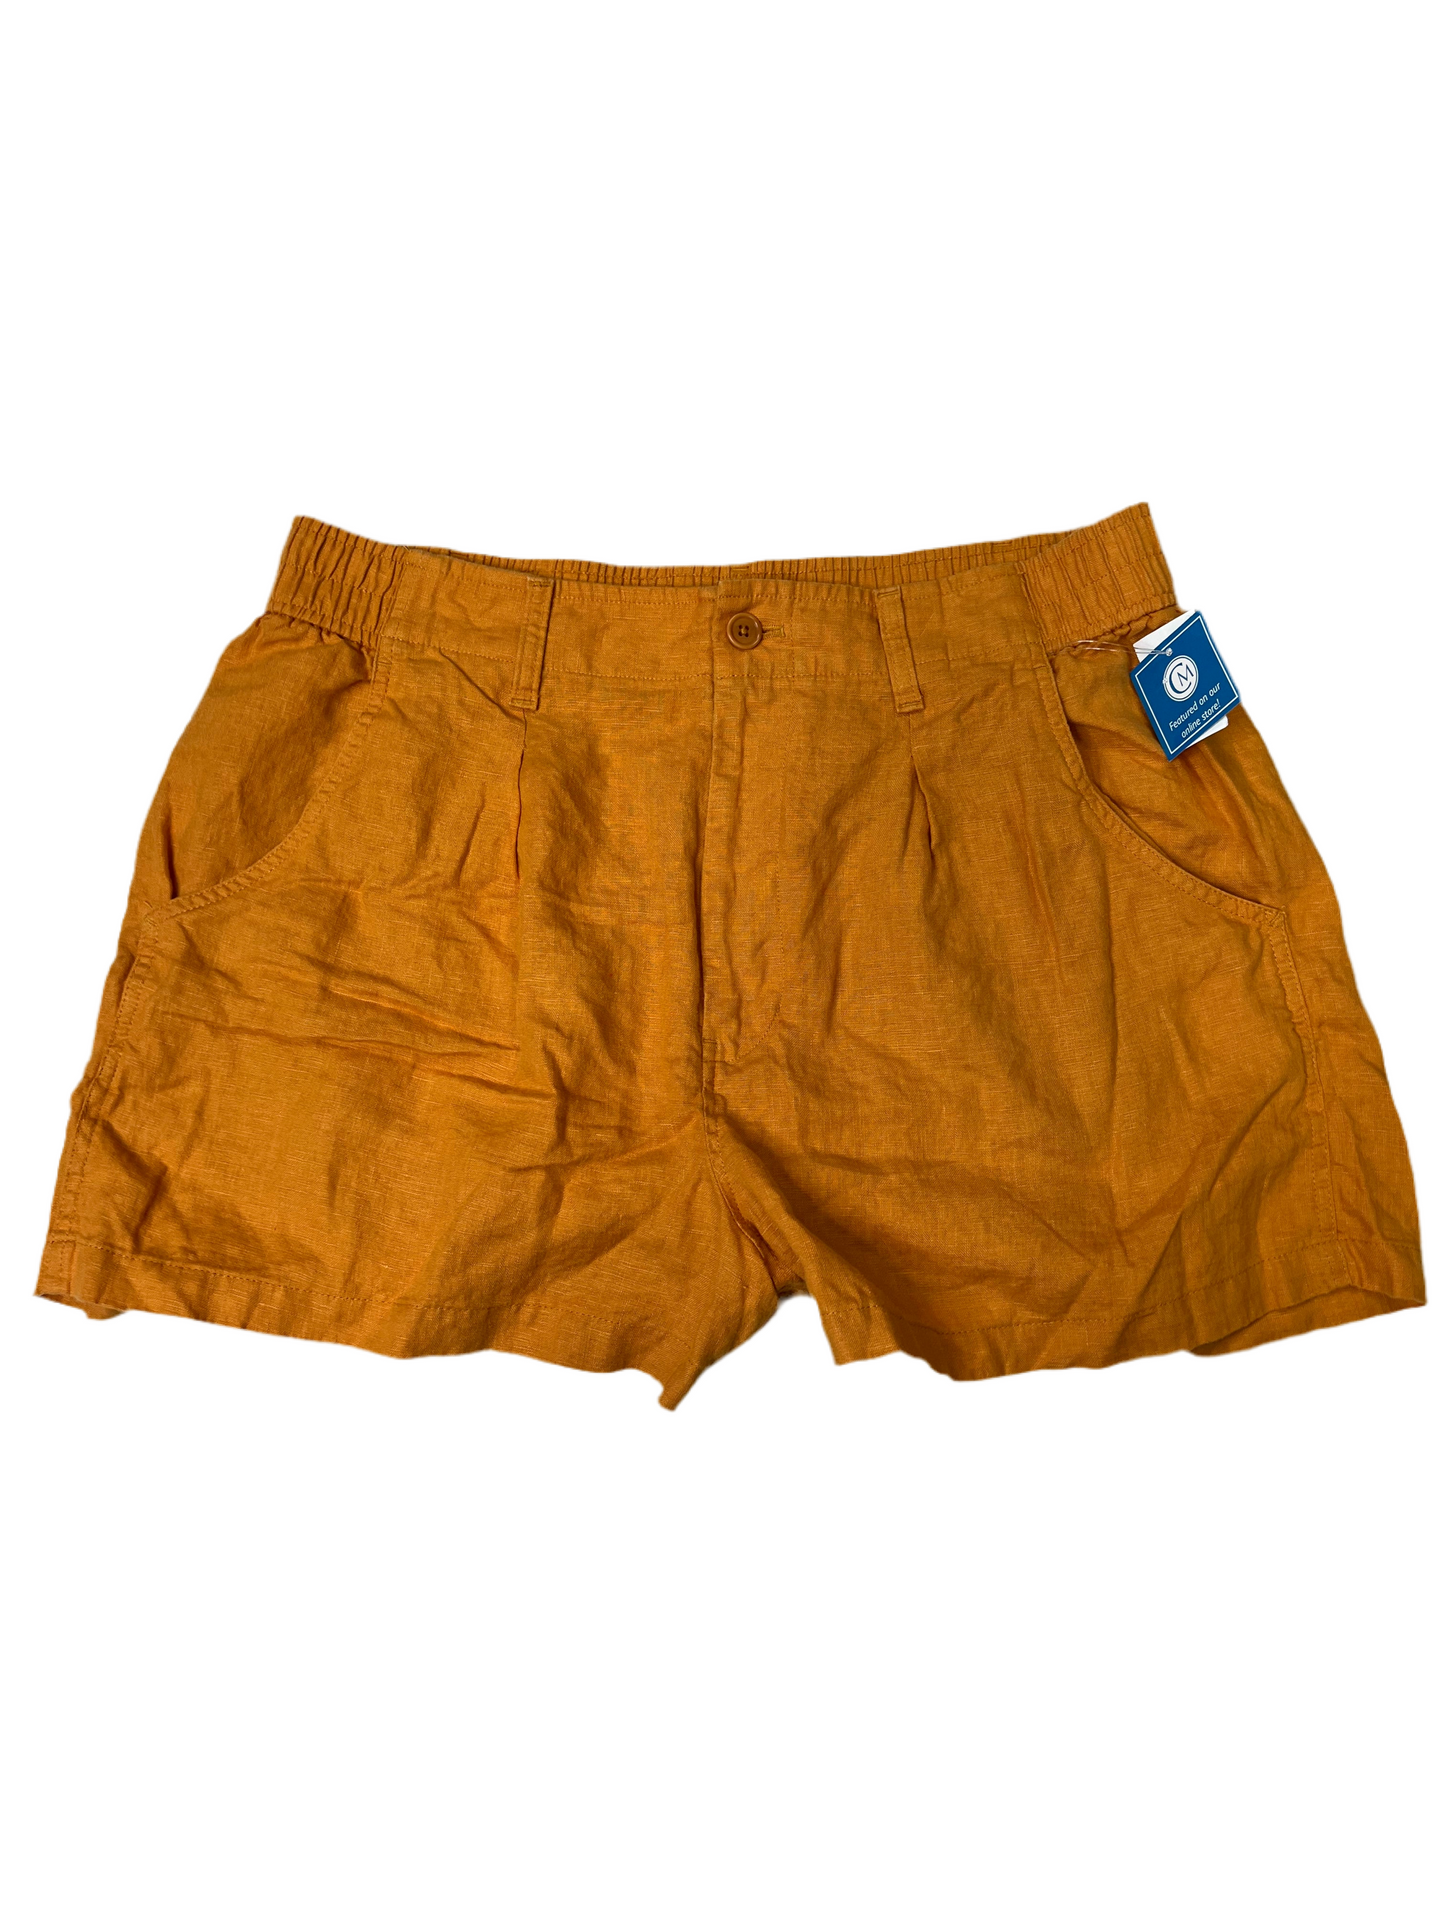 Orange Shorts Madewell, Size 14